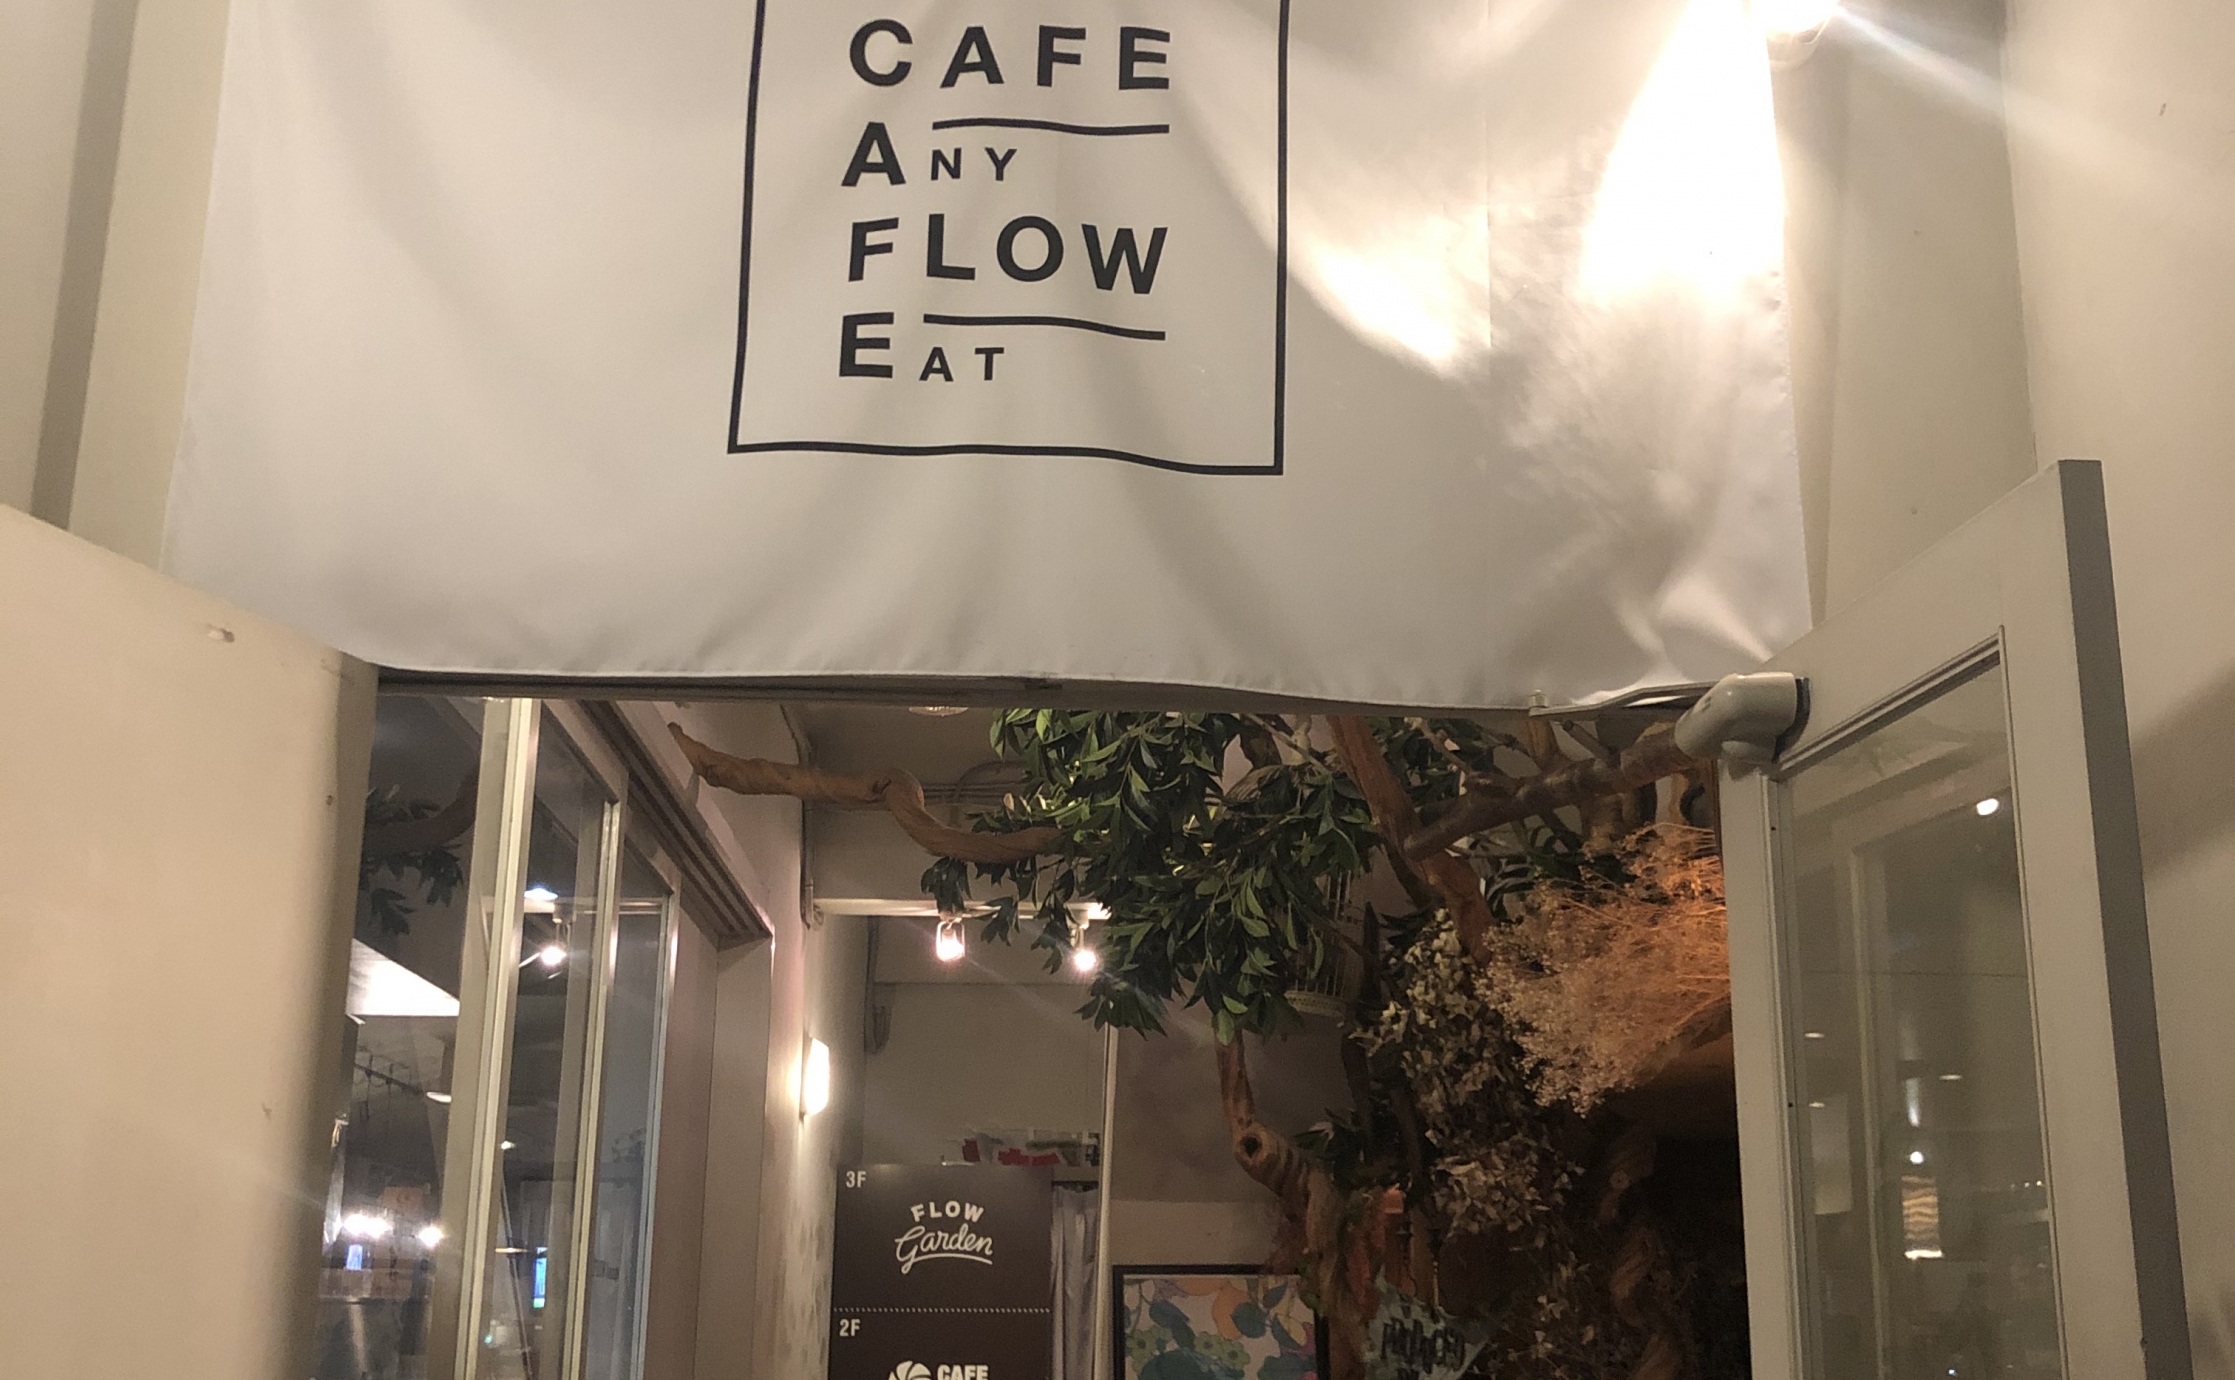 CAFE FLOW